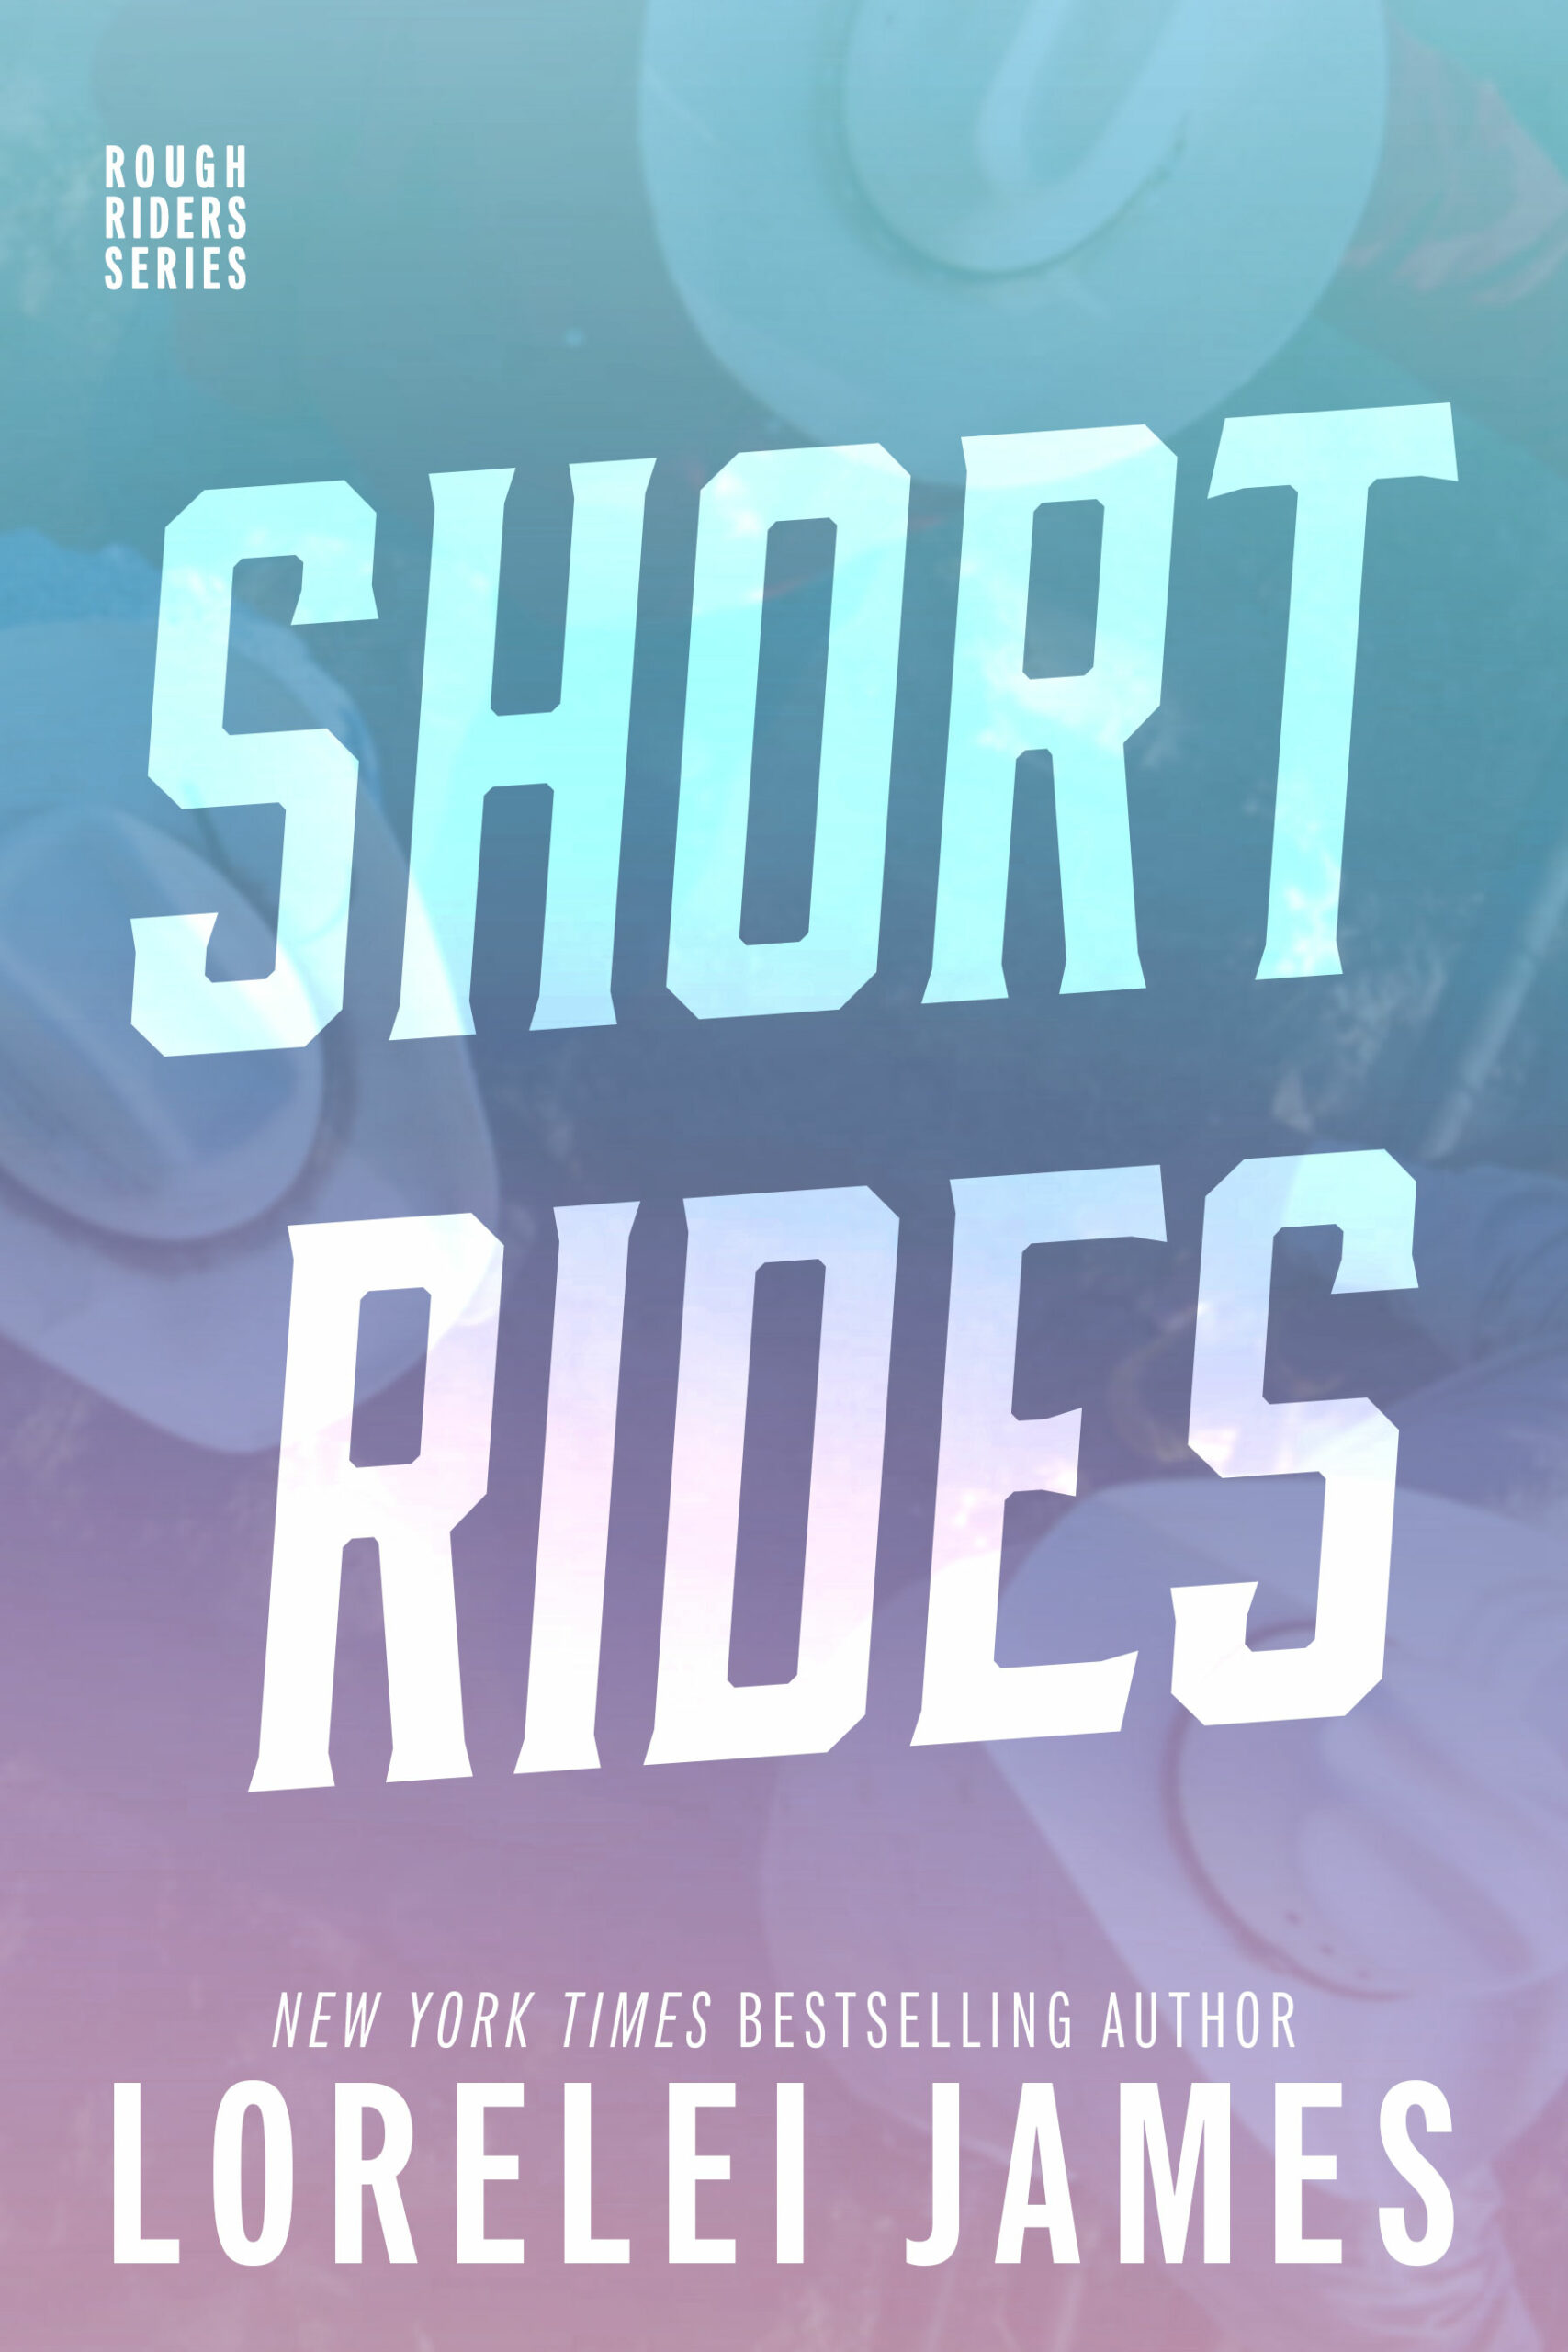 Short Rides